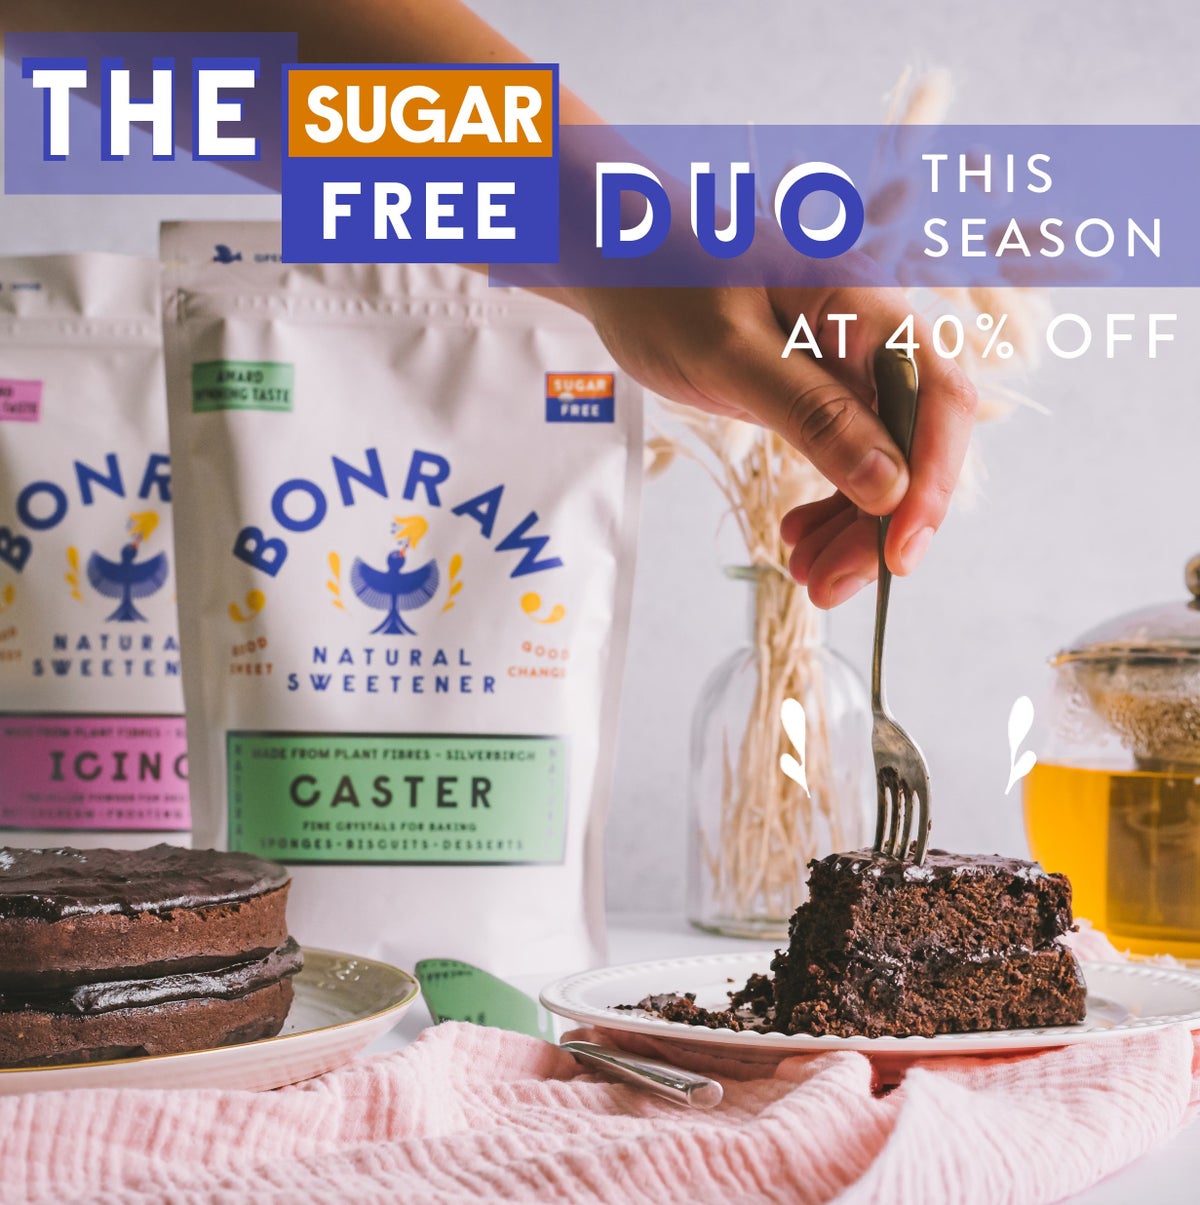 The sugar-free duo. This season at 40% off.